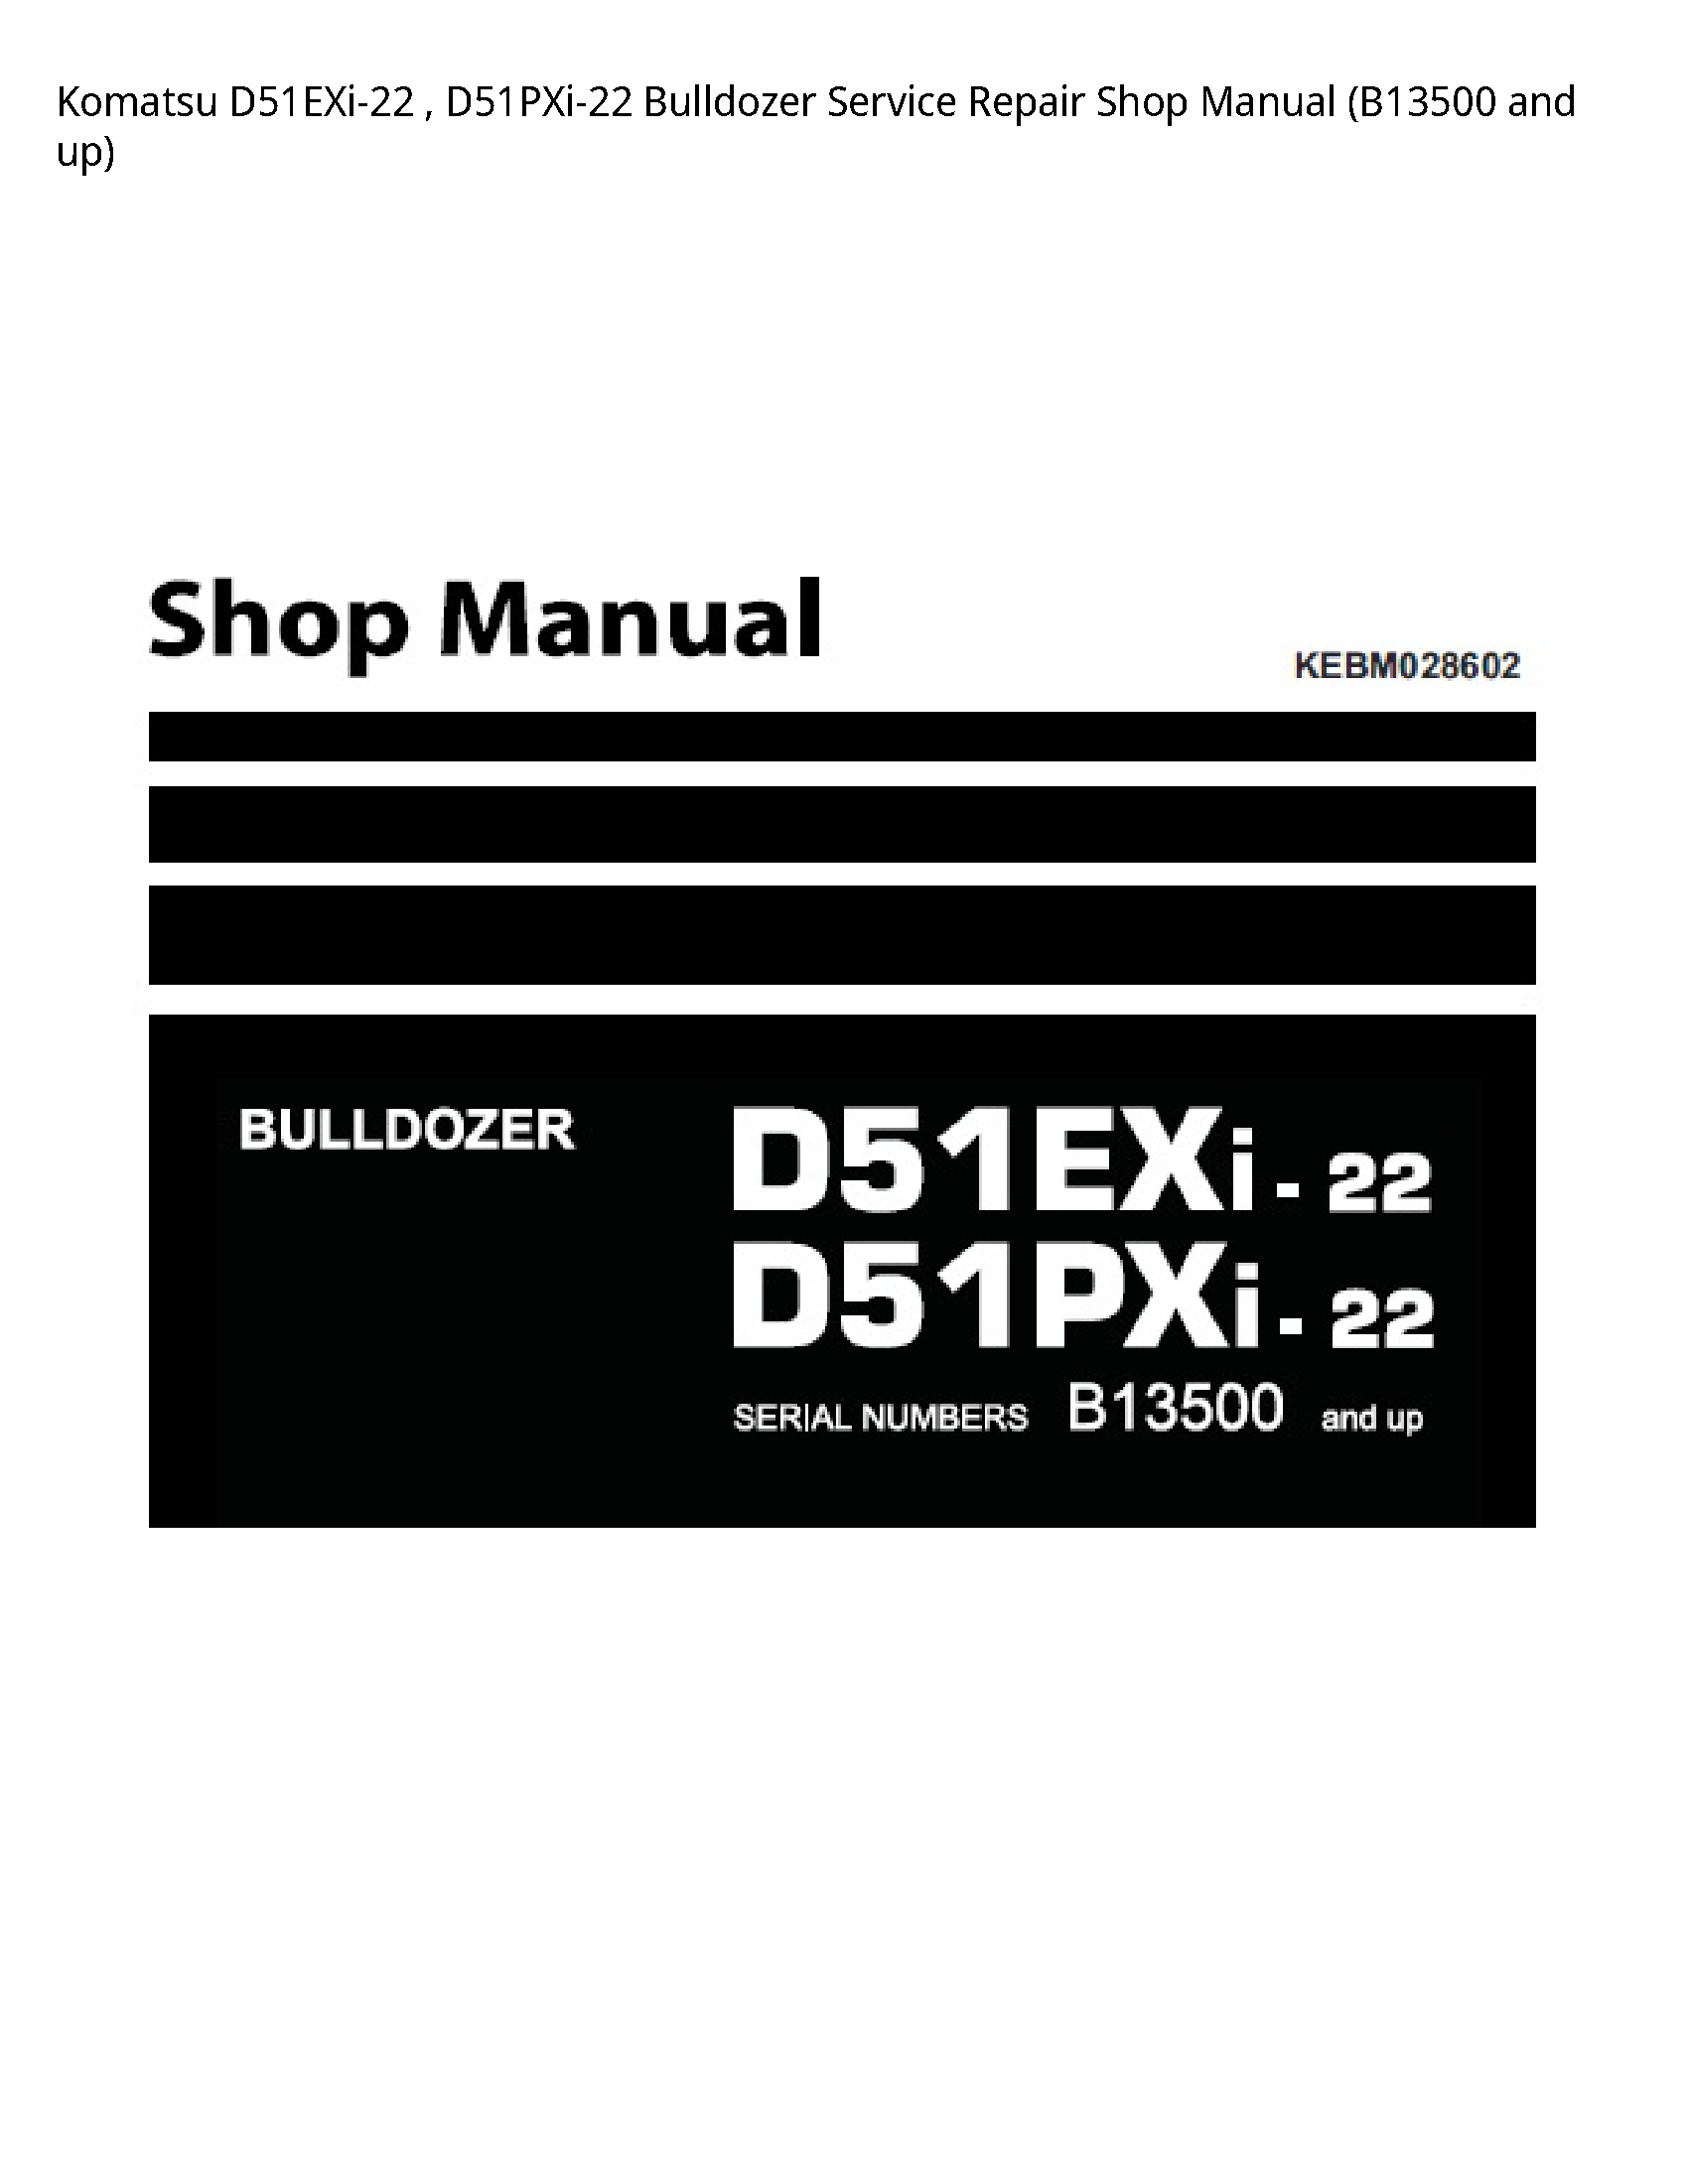 KOMATSU D51EXi-22 Bulldozer manual